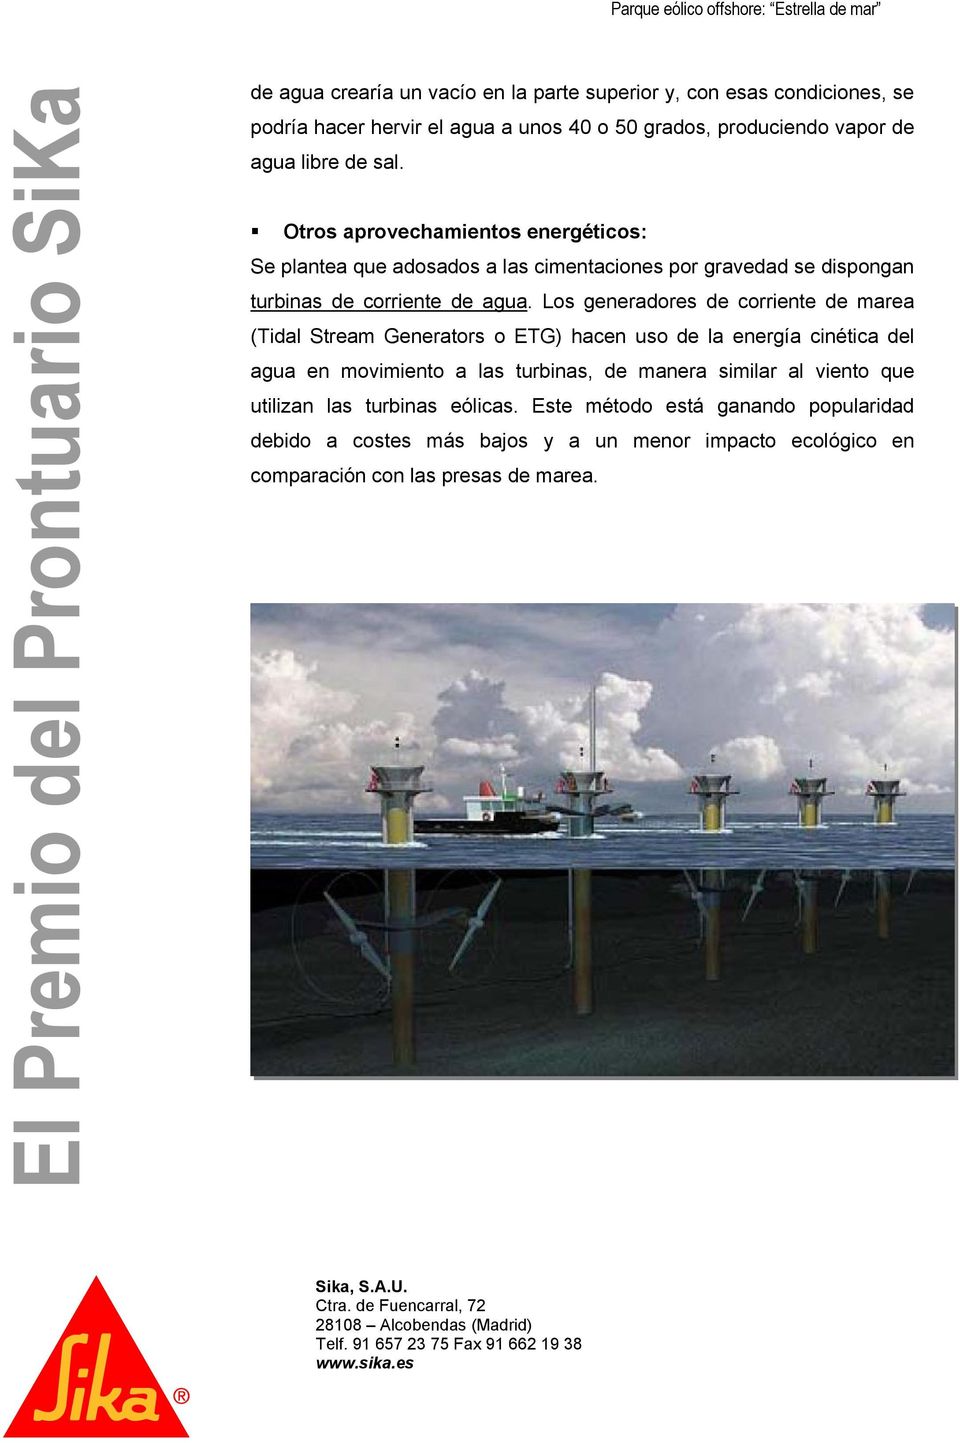 Los generadores de corriente de marea (Tidal Stream Generators o ETG) hacen uso de la energía cinética del agua en movimiento a las turbinas, de manera similar